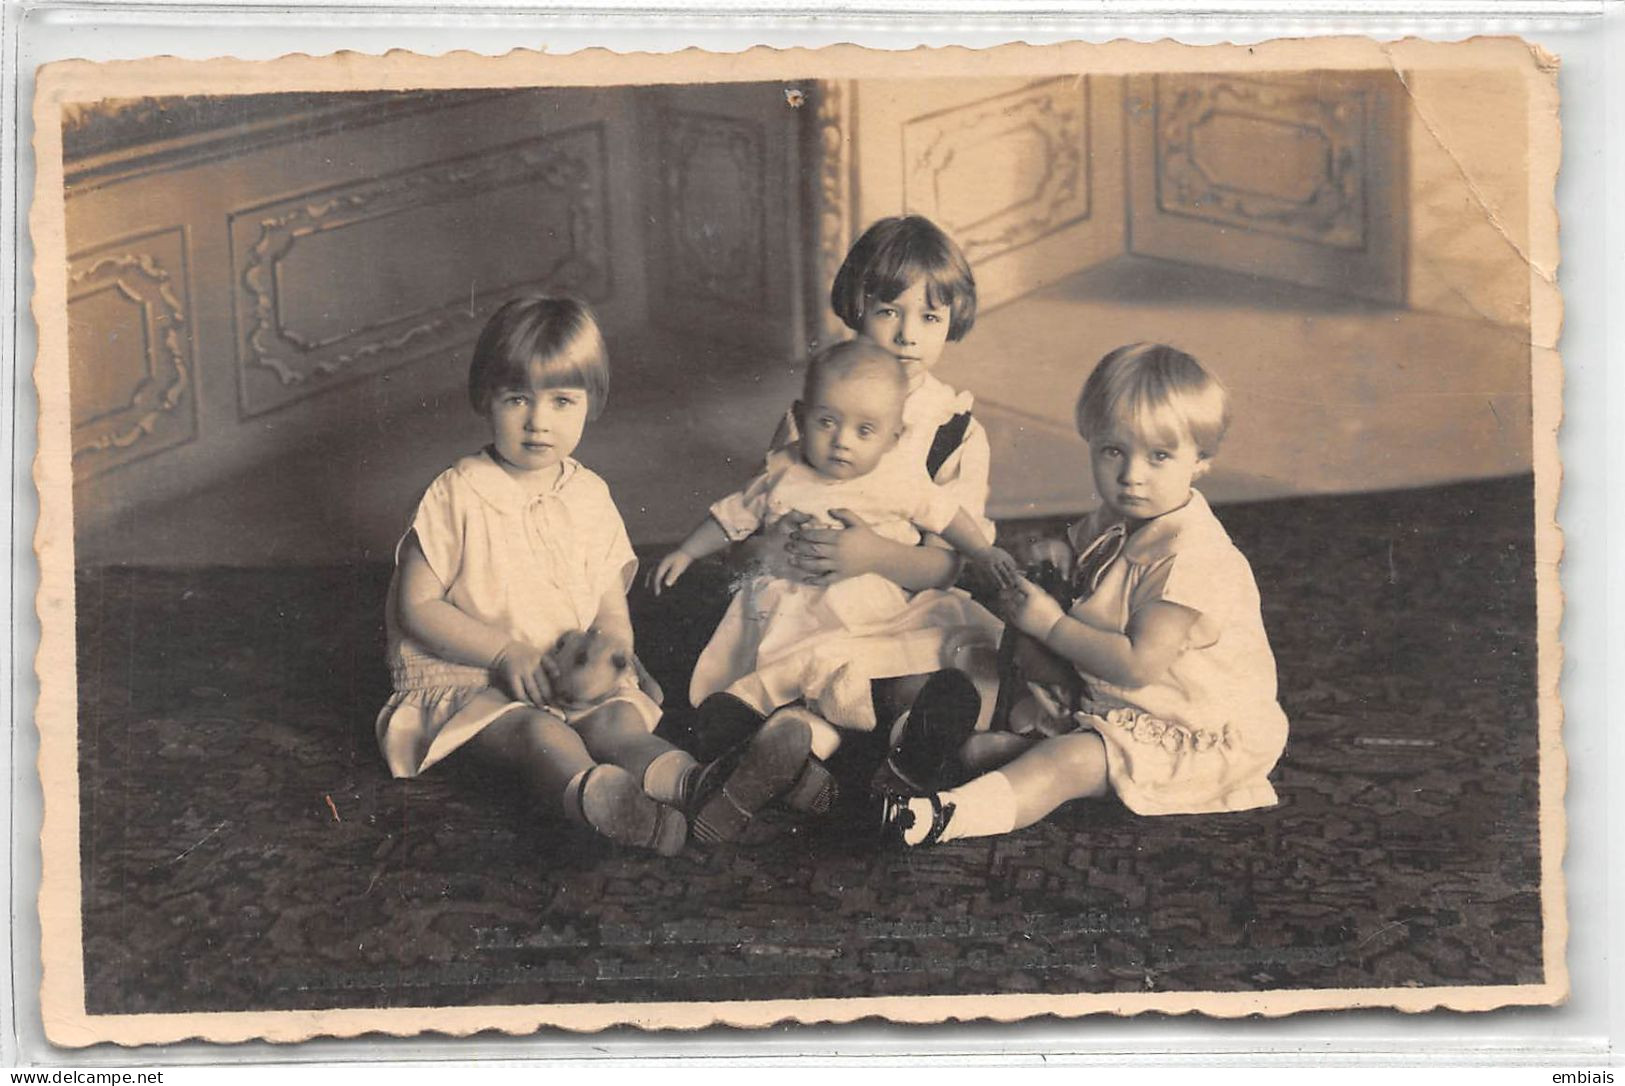 LUXEMBOURG 1934 - Carte Photo Les Enfants Grand - Ducaux, Altesses Royales De Luxembourg - Famille Grand-Ducale